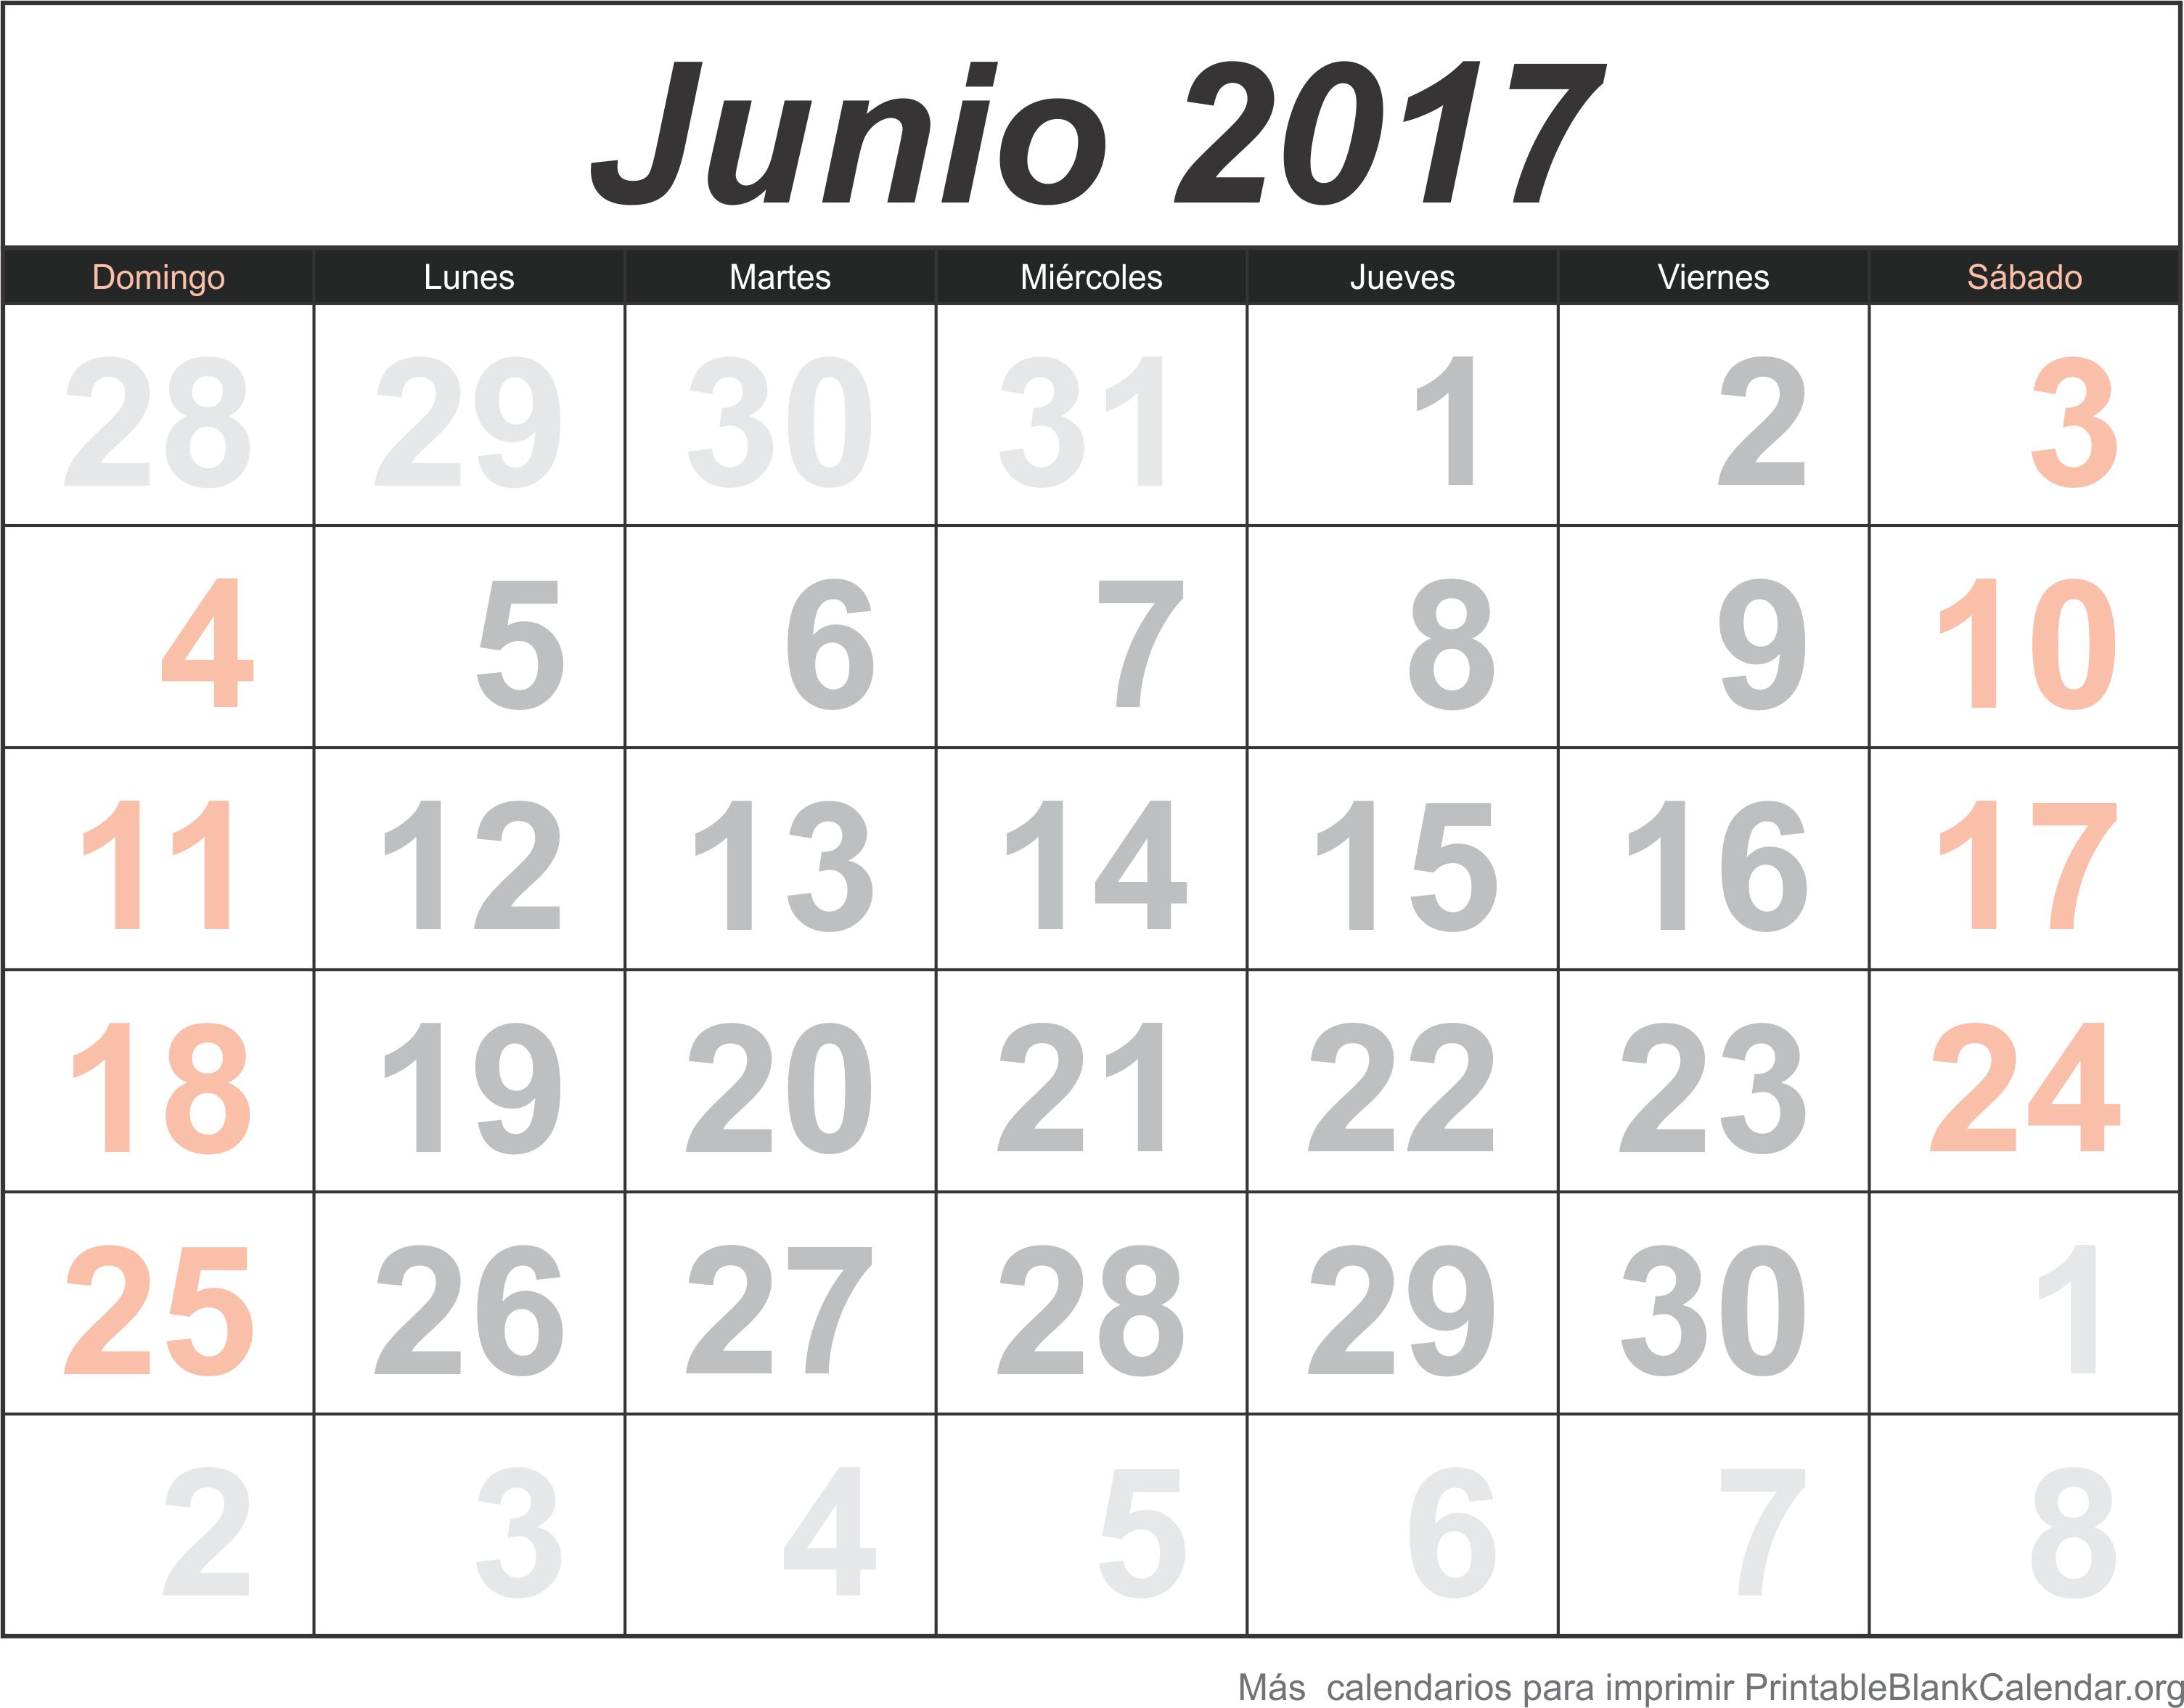 jun 2017 calendario